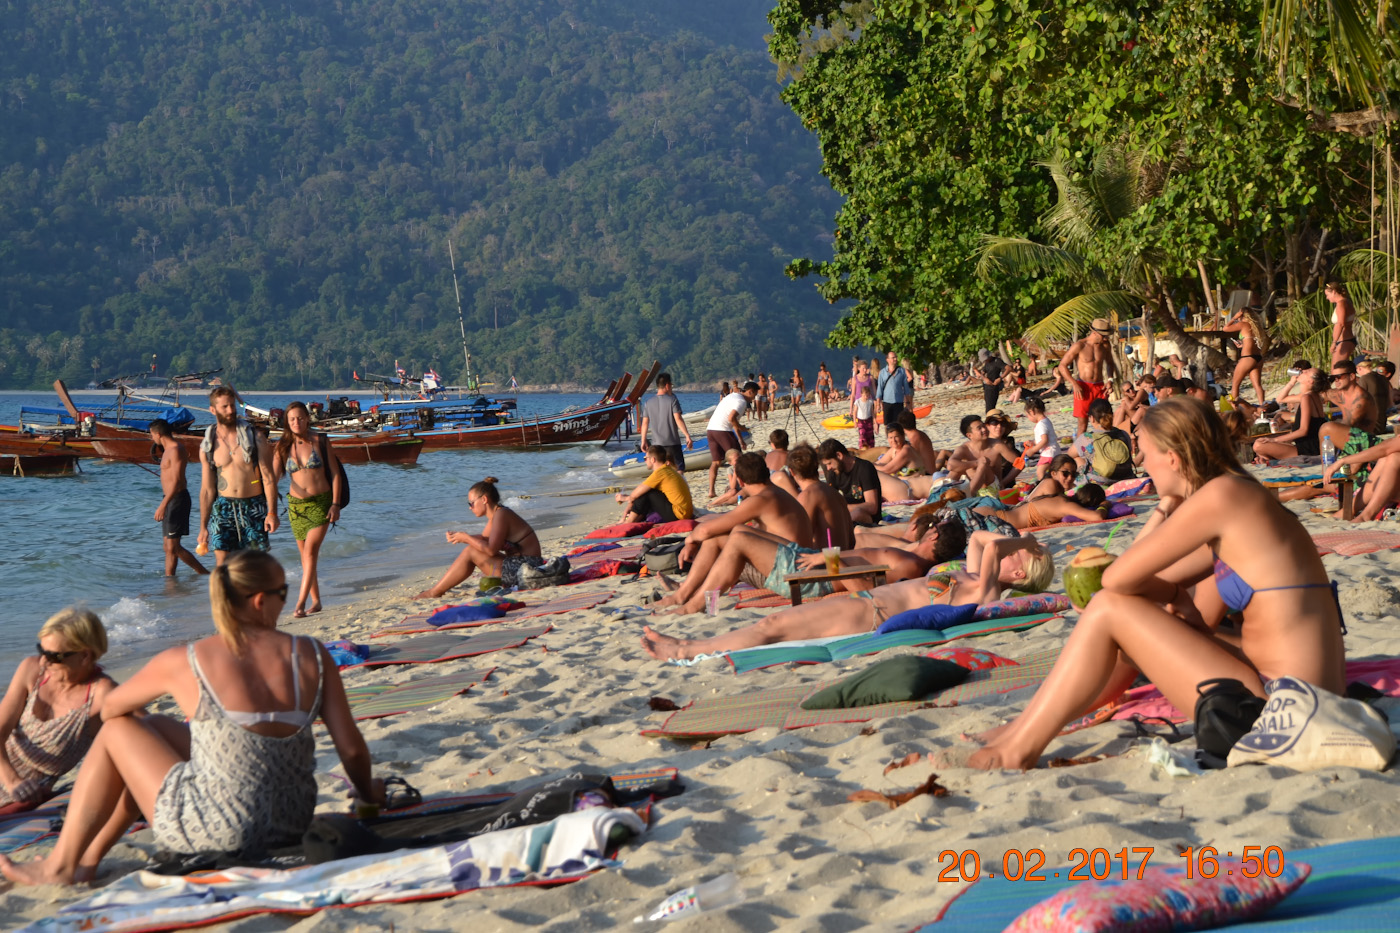 Фото 13. Отдыхающие на пляже Сансет-бич острова Ко-Липе. Отзывы туристов о поездке в Таиланд самостоятельно. 1/200, 7.1, 100, 55.